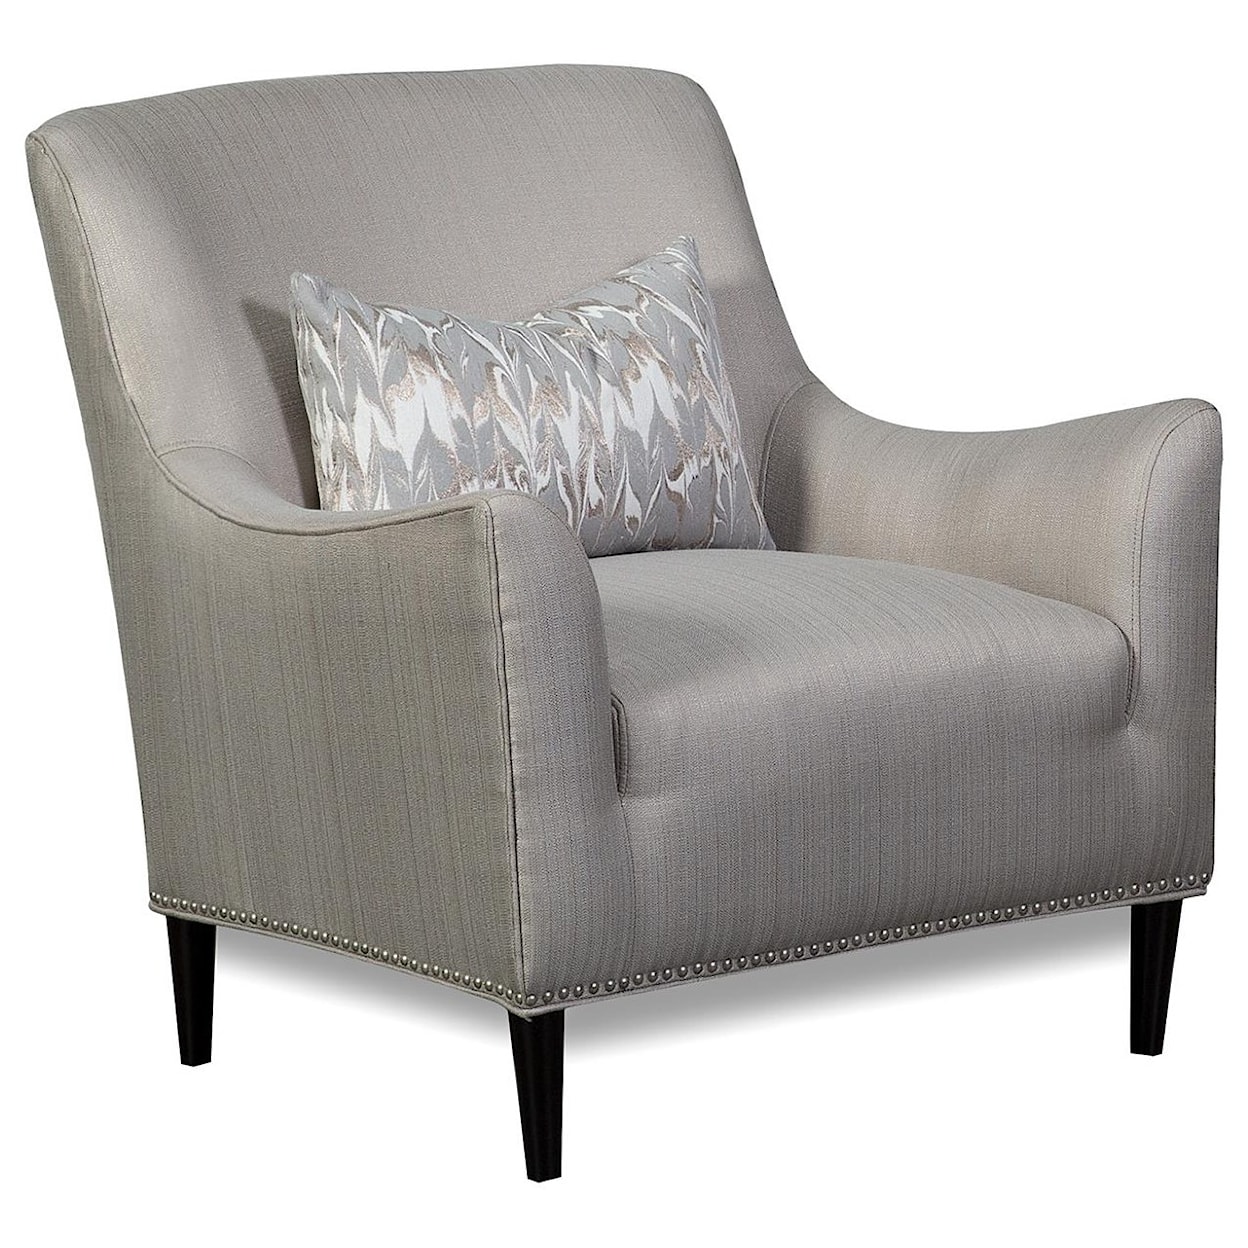 Aria Designs Ava Fresco Easton Accent Chair